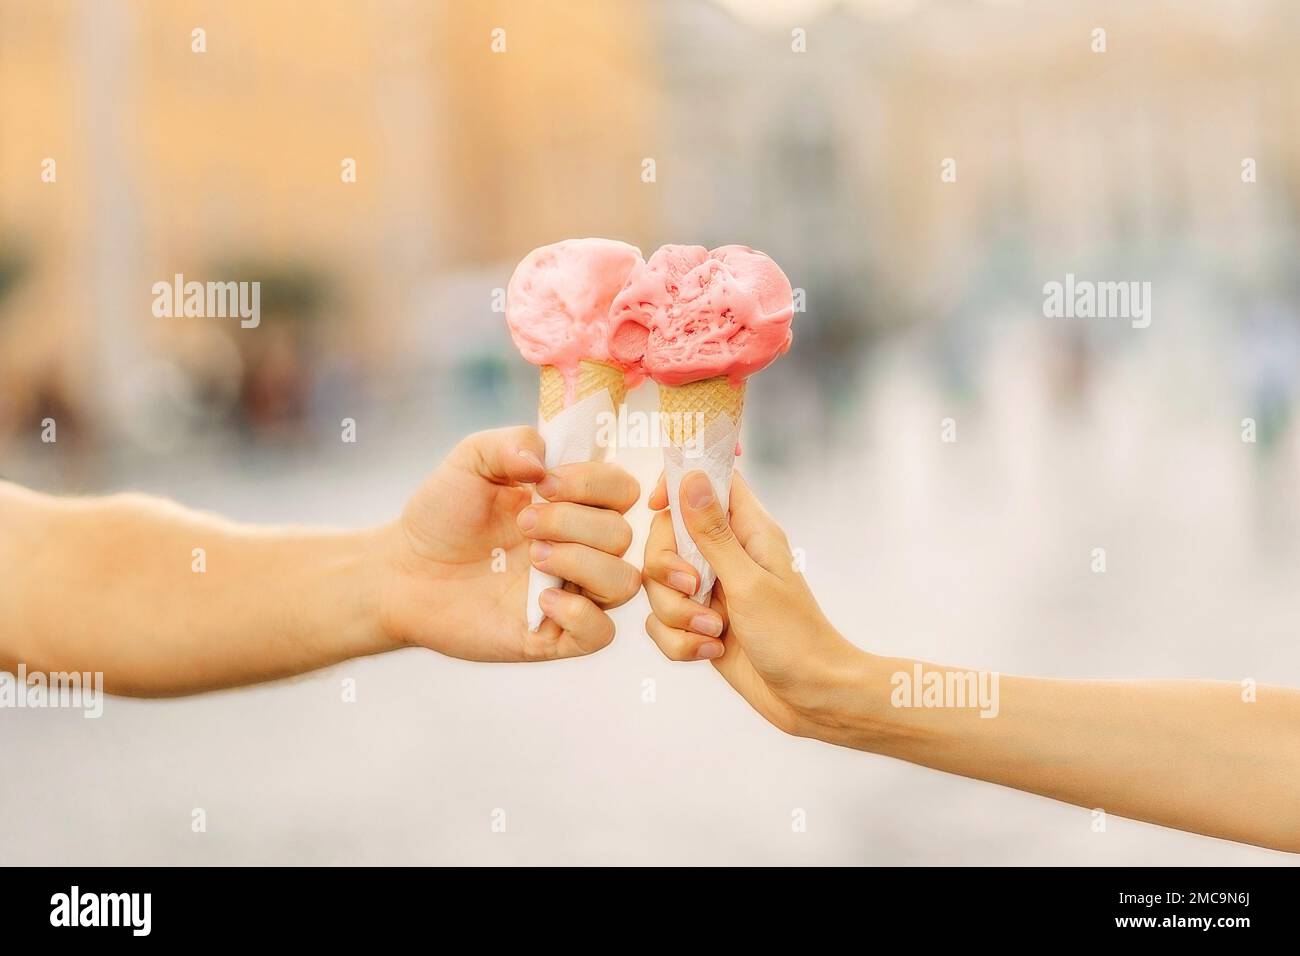 Le mani da uomo e da donna tengono un cono gelato luminoso. Mani che tengono il cono gelato. Estate. Intrattenimento turistico Foto Stock